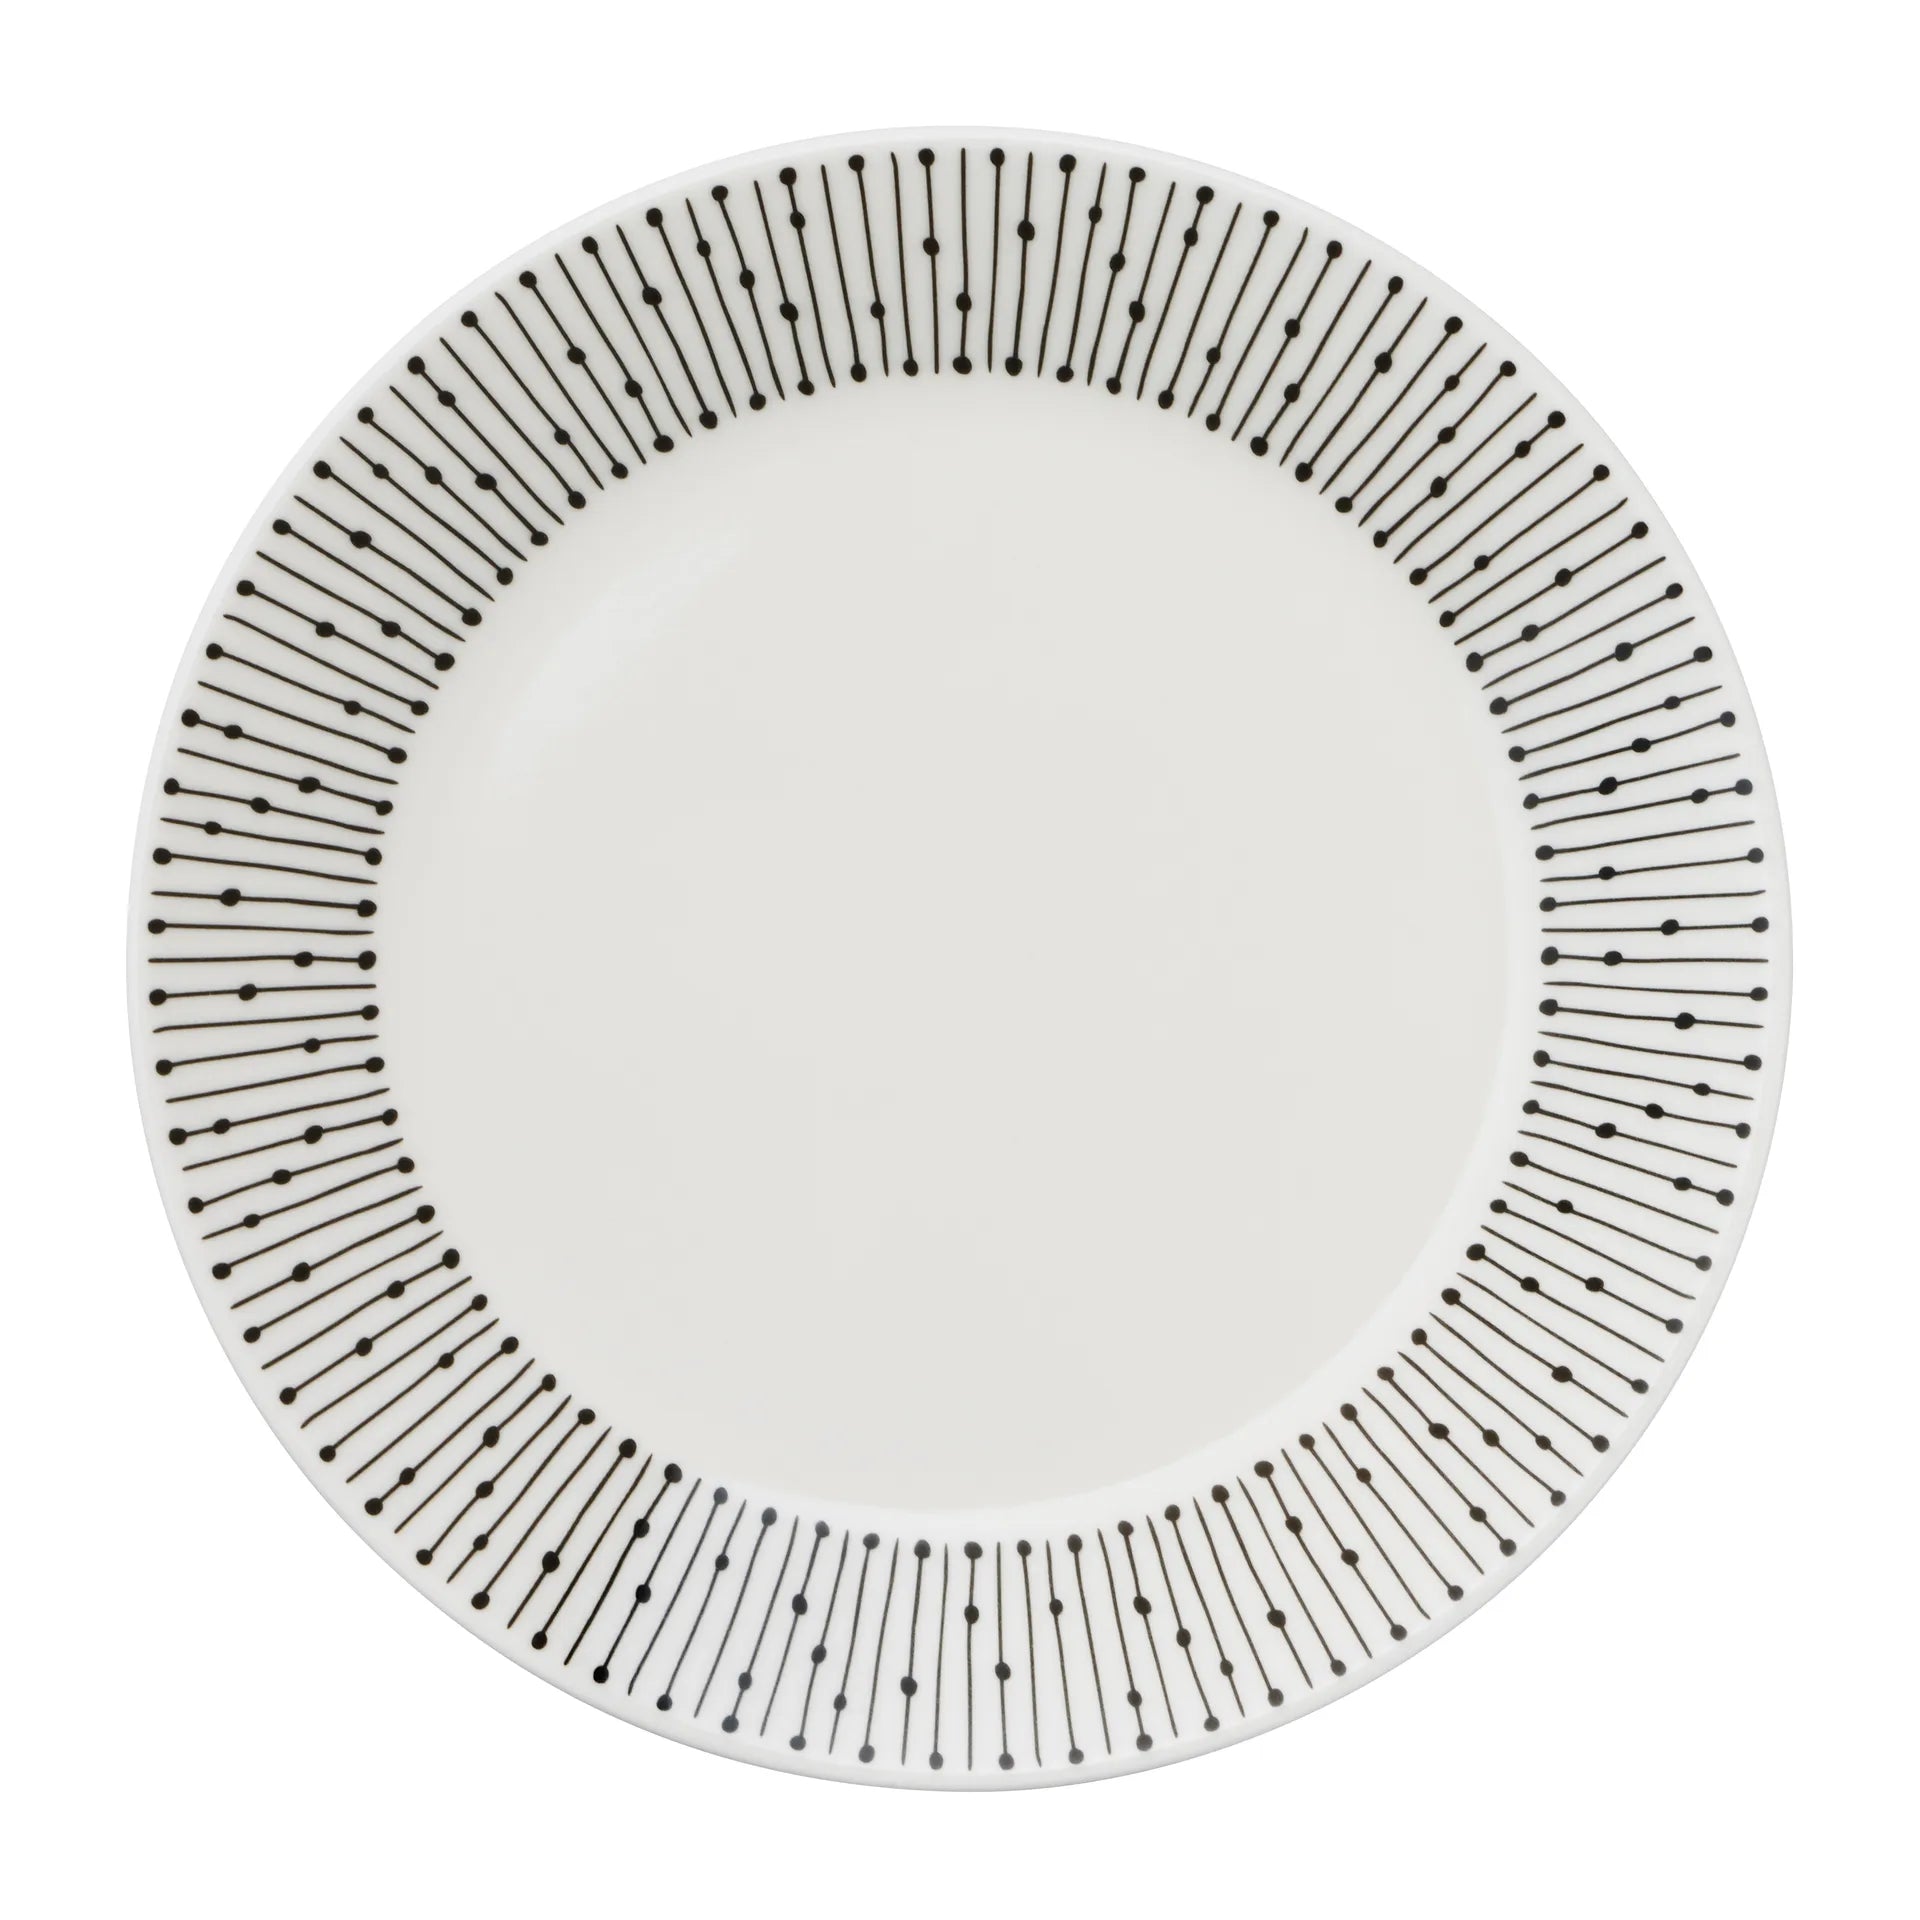 Mainio Sarastus plate Ø15 cm - Black-white